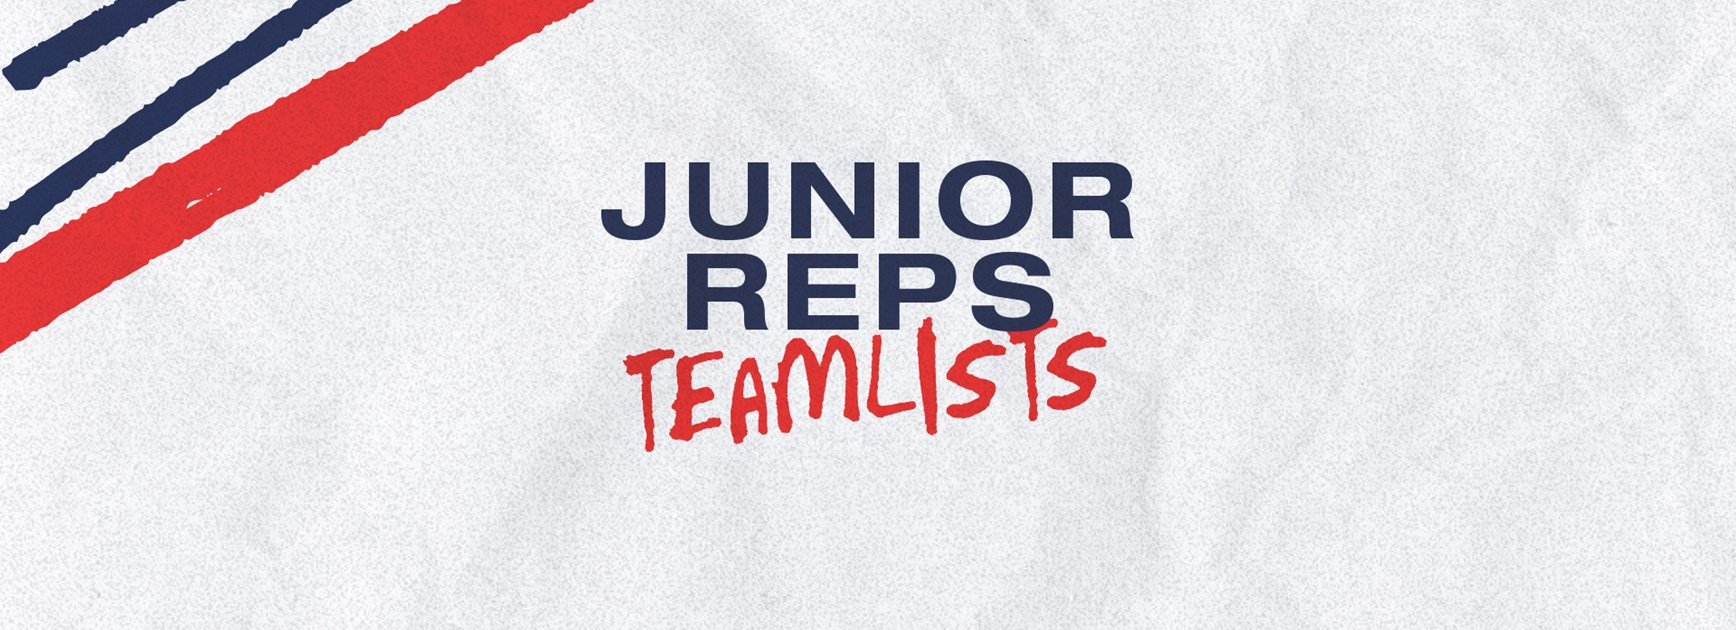 Junior Representative Teamlists for Round 9 Announced